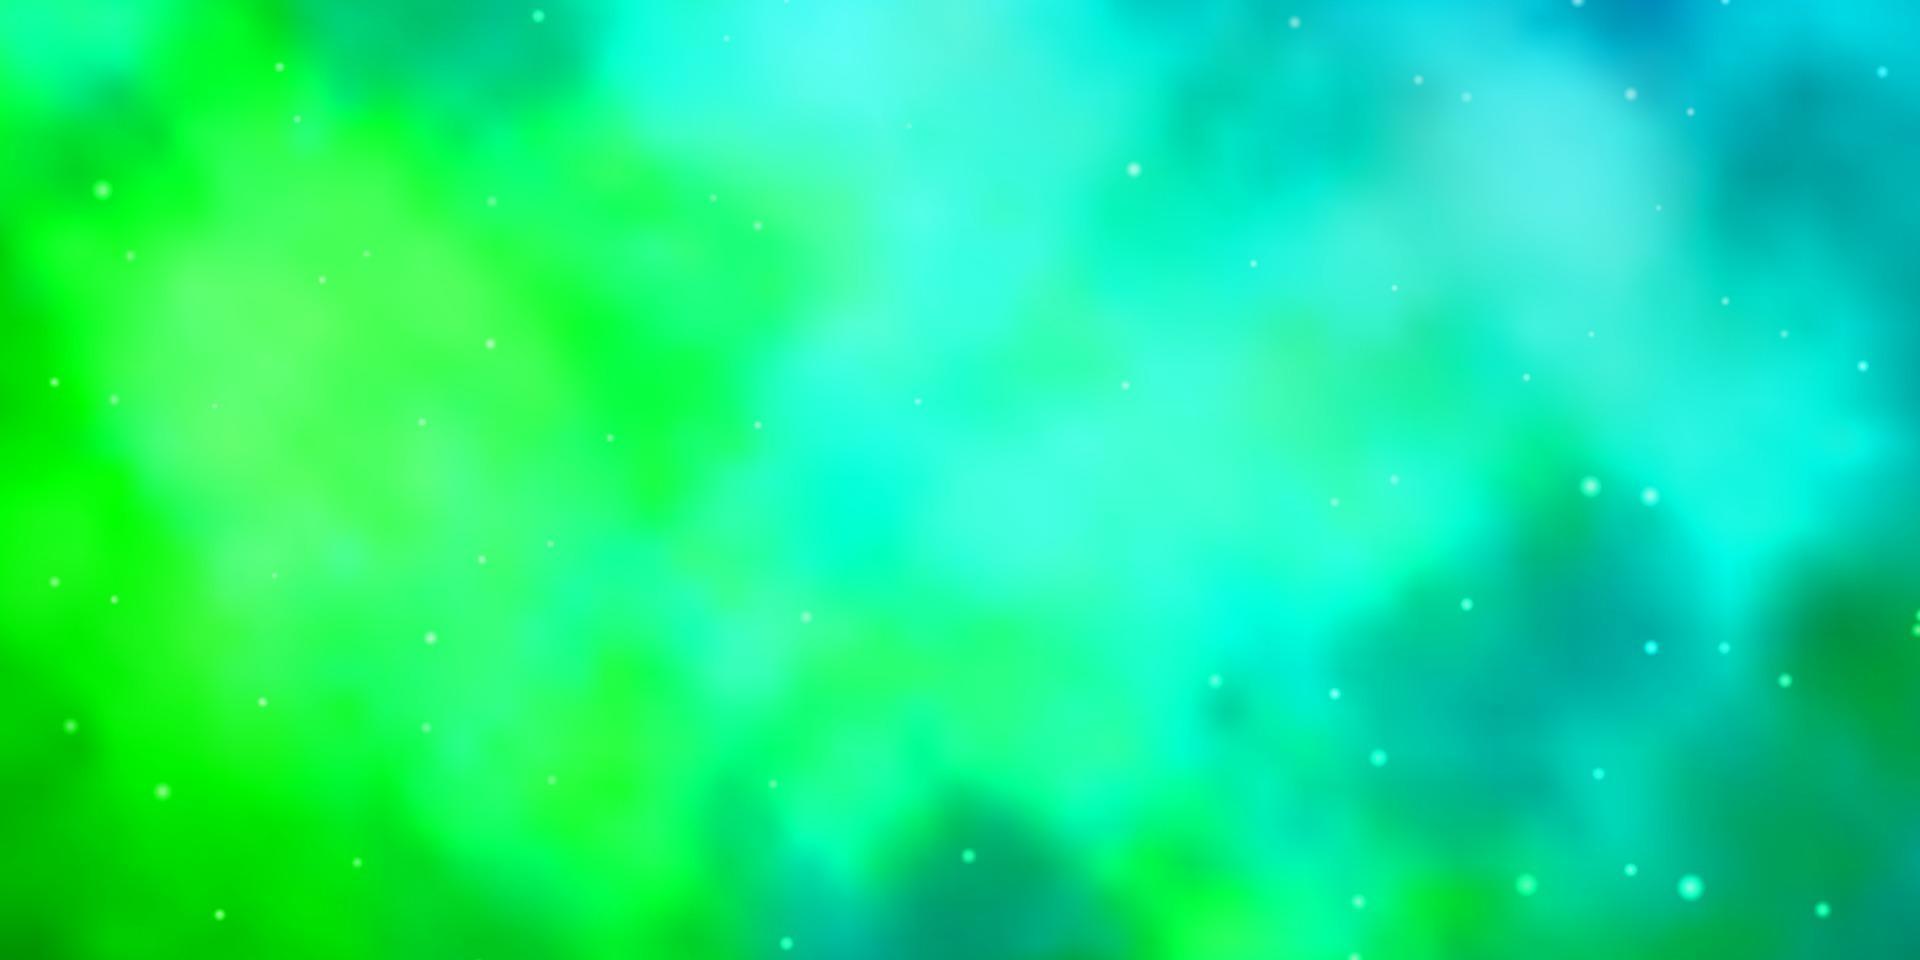 lichtblauw, groen vectormalplaatje met neonsterren. vector